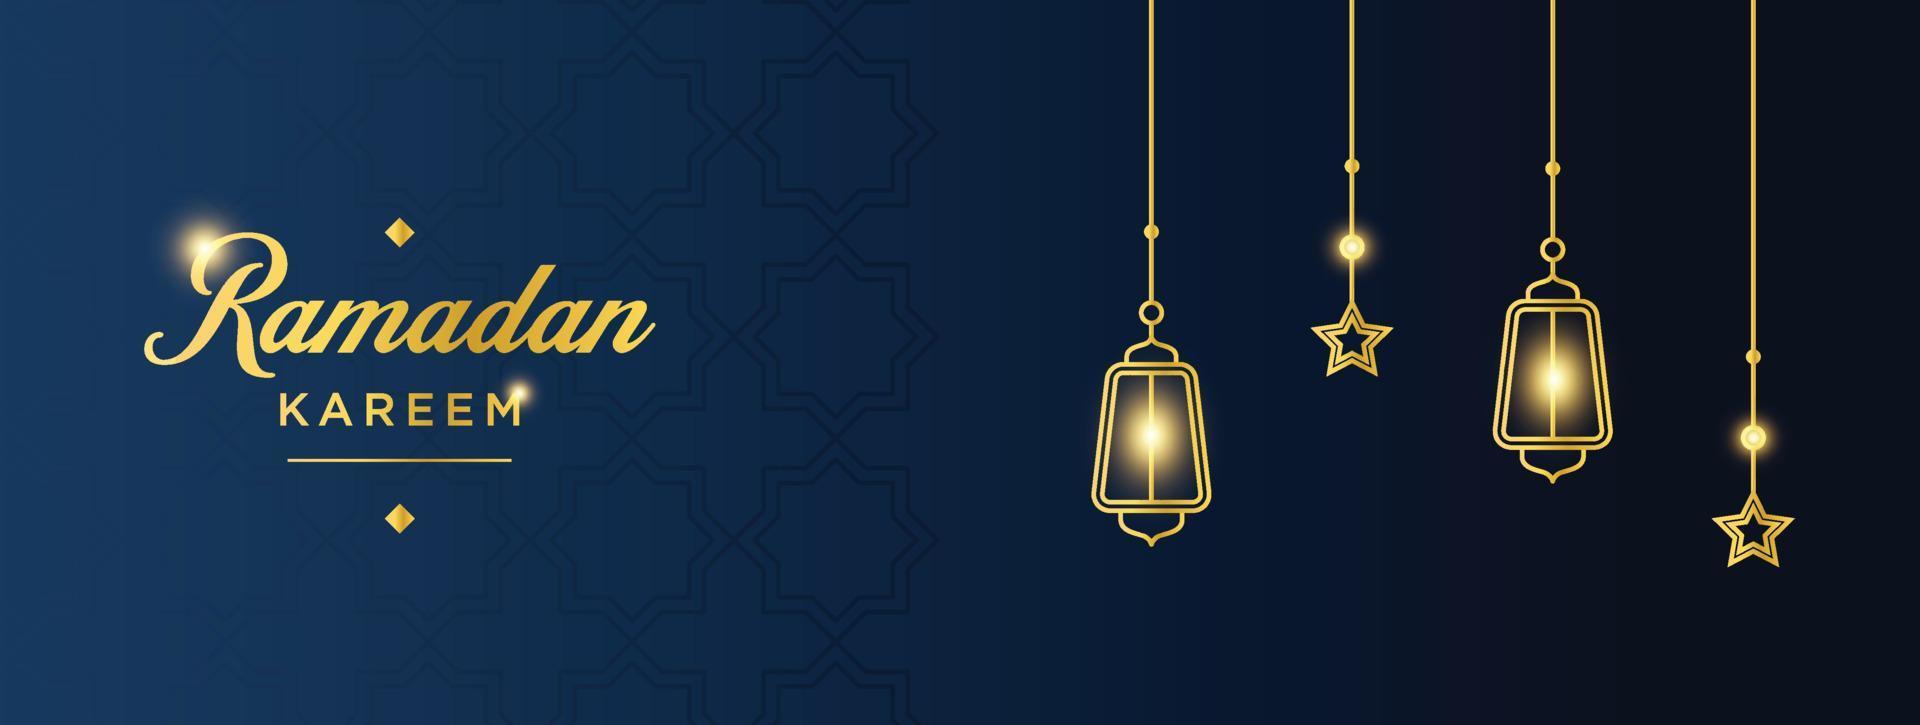 bandiera del ramadan kareem. modello grafico di festa islamica del ramadan con ornamento d'oro e luce vettore